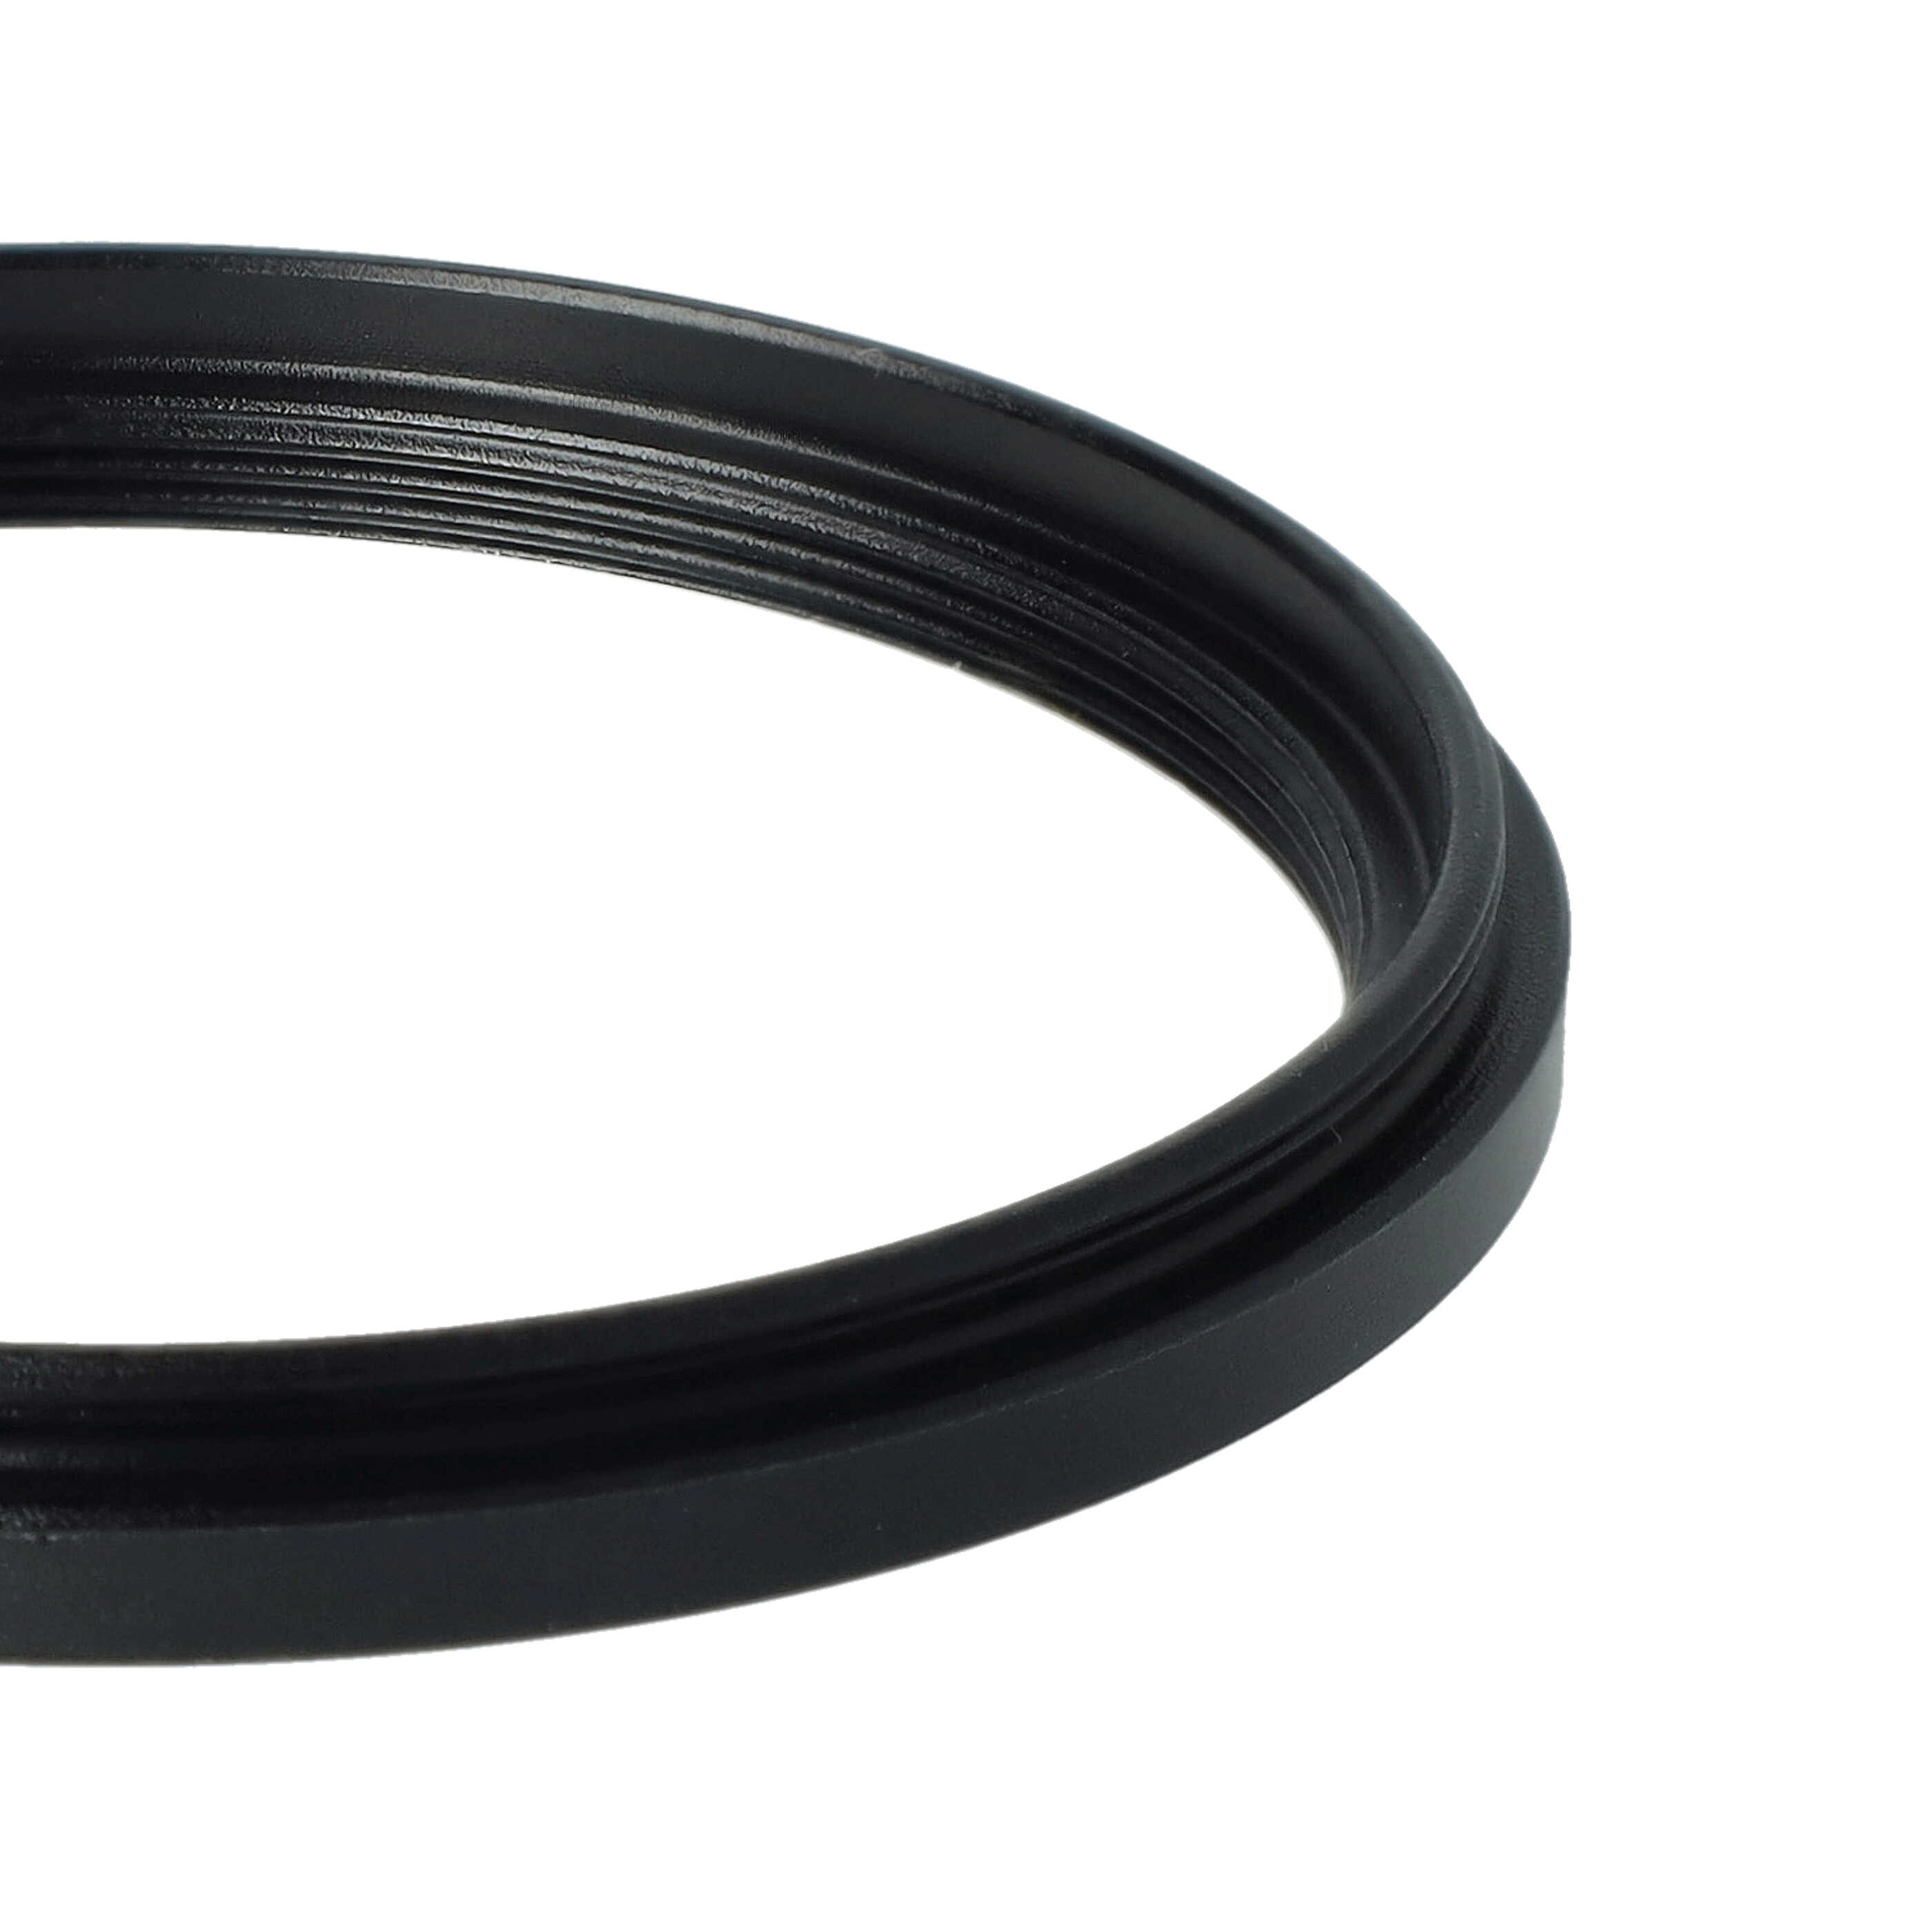 Redukcja filtrowa adapter Step-Down 58 mm - 52 mm pasująca do obiektywu - metal, czarny